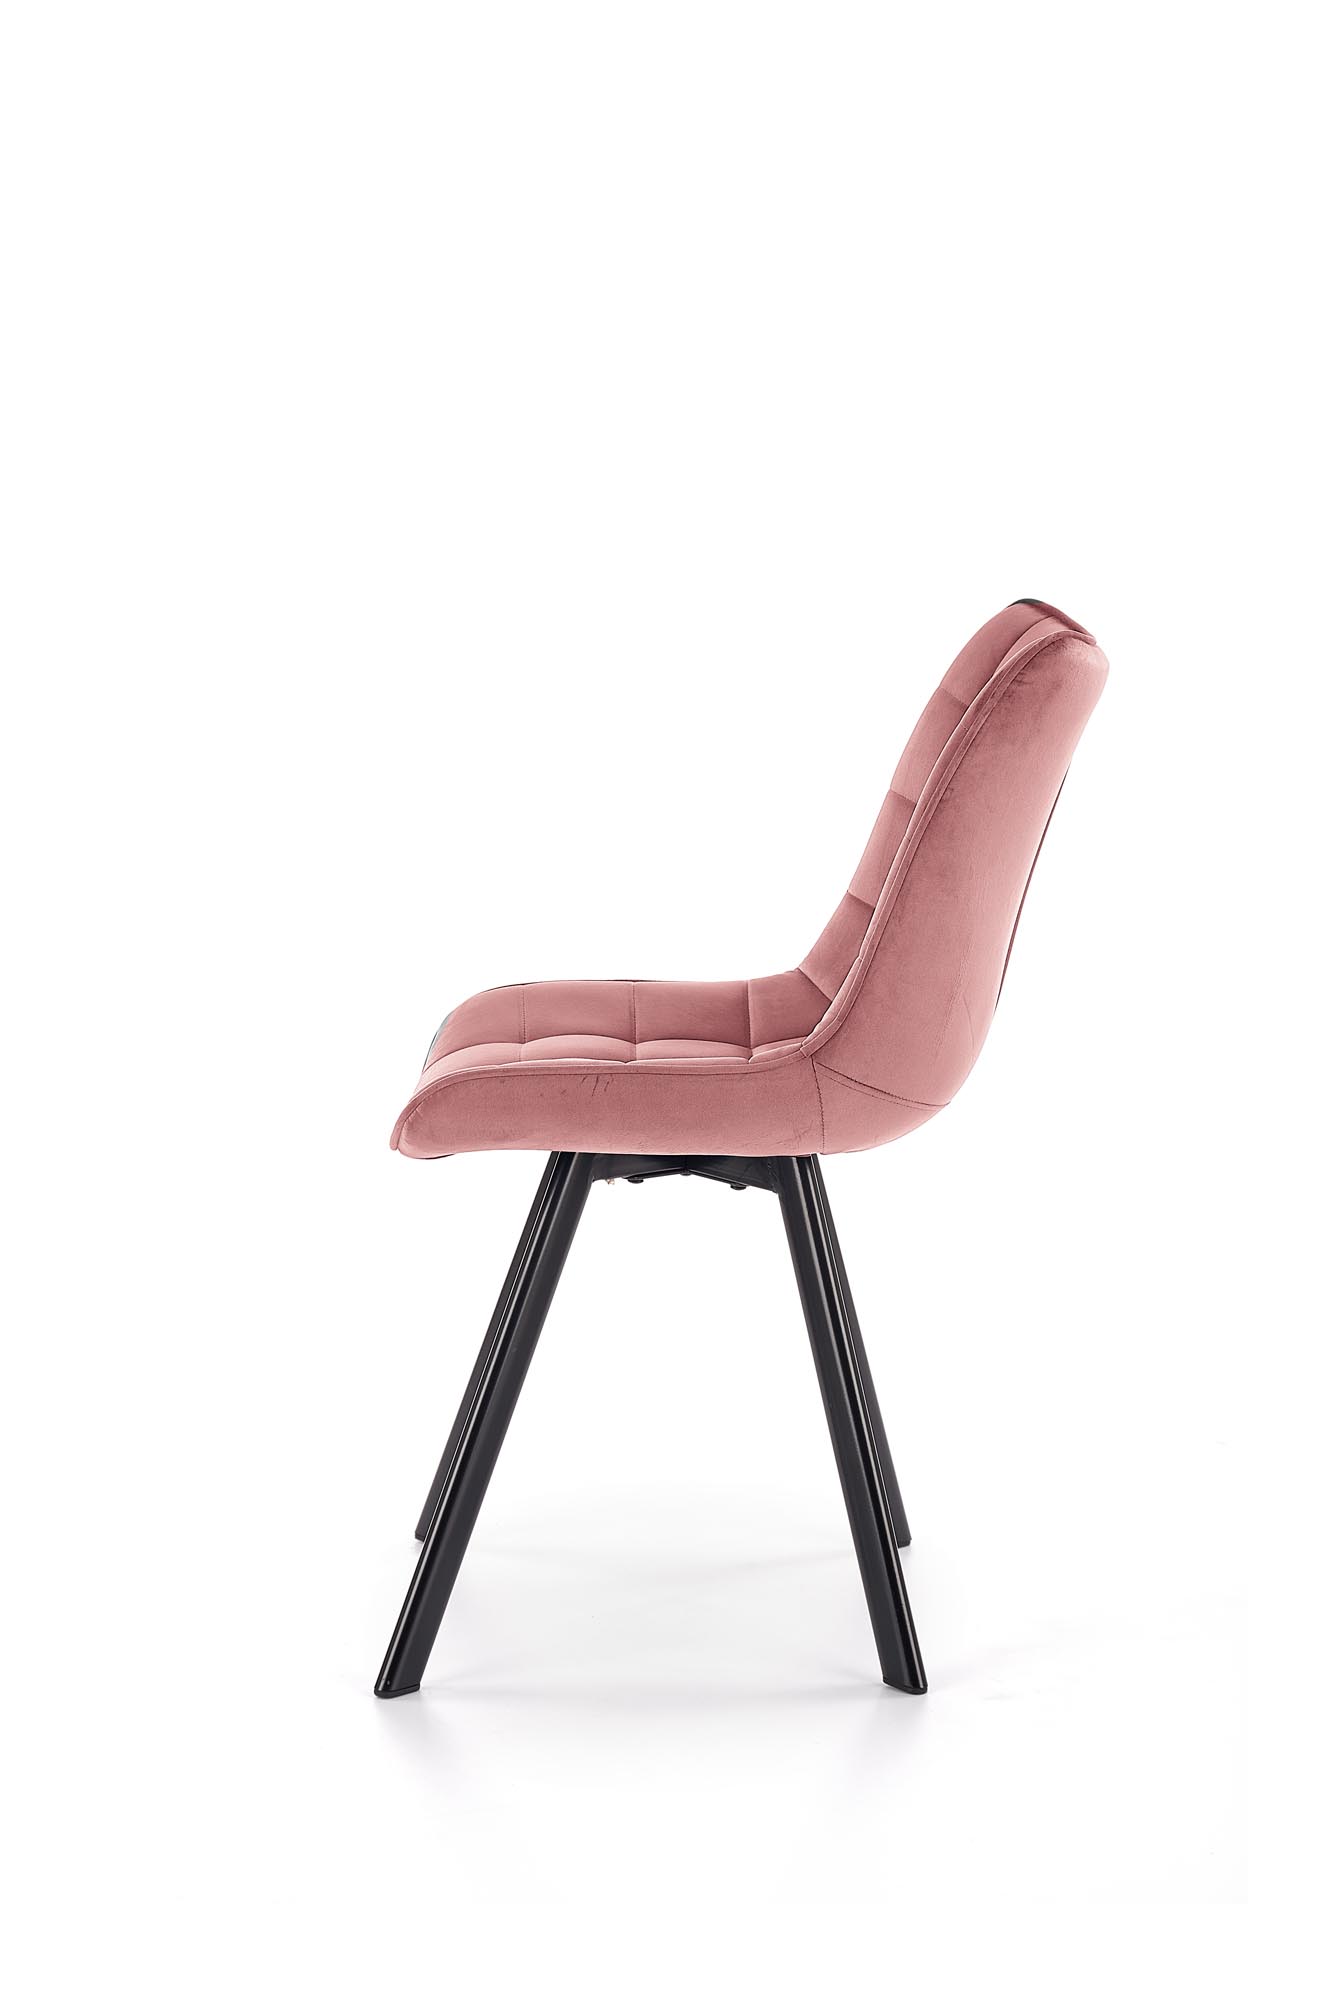 K332 széklábak - fekete, ülés - rózsaszín k332 Židle Nohy - čierna, Sedák - Růžová